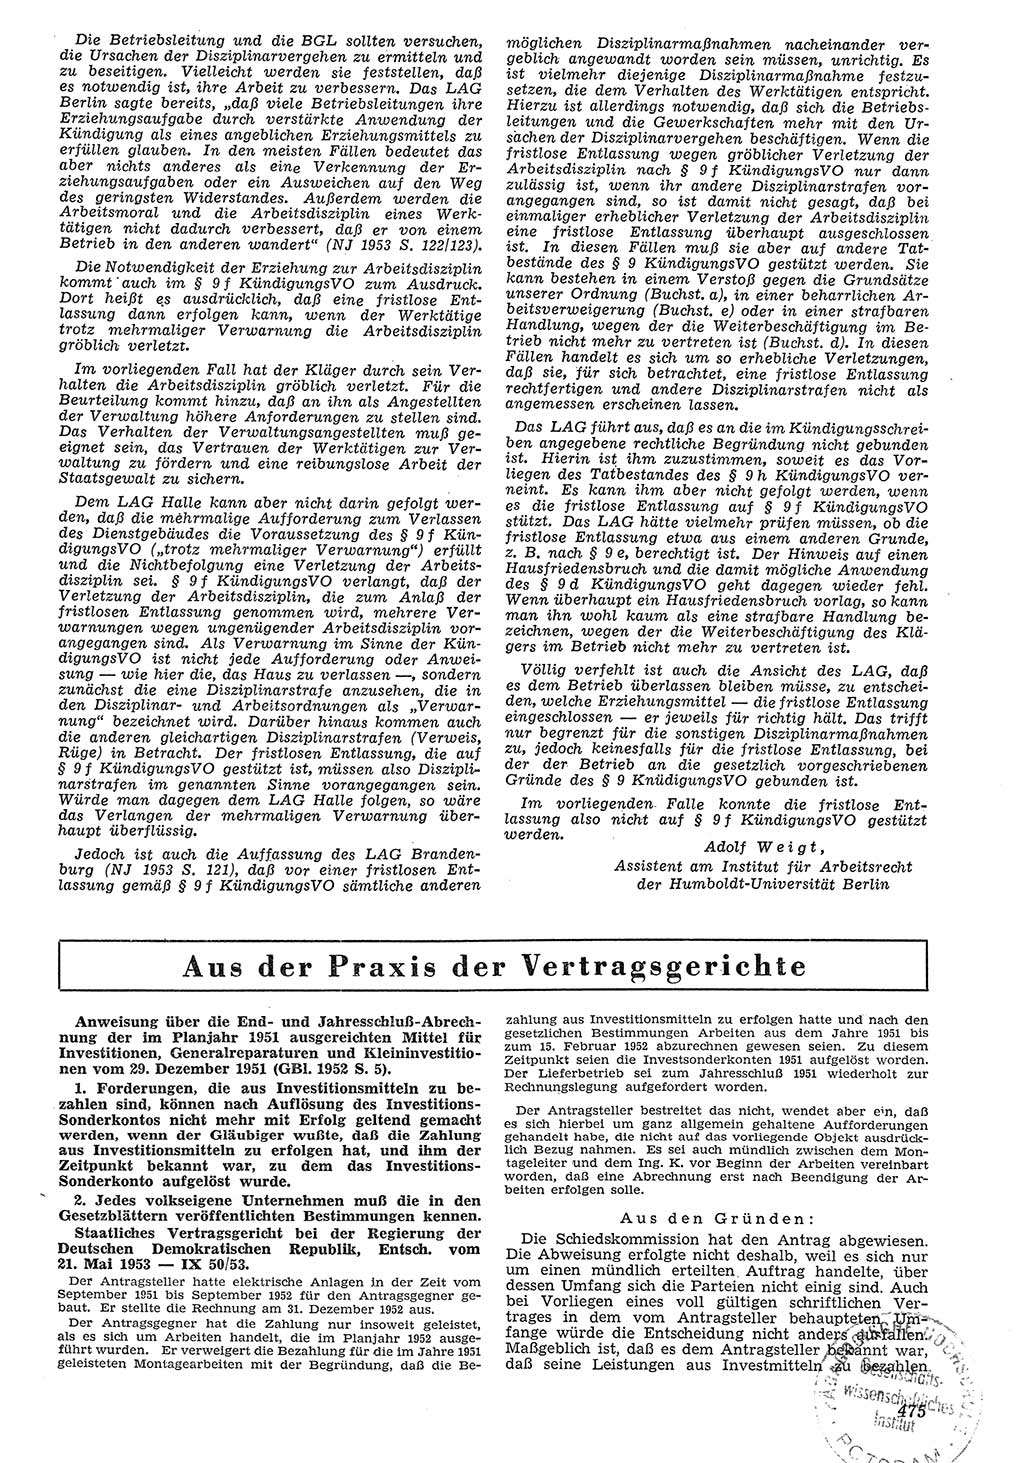 Neue Justiz (NJ), Zeitschrift für Recht und Rechtswissenschaft [Deutsche Demokratische Republik (DDR)], 7. Jahrgang 1953, Seite 475 (NJ DDR 1953, S. 475)